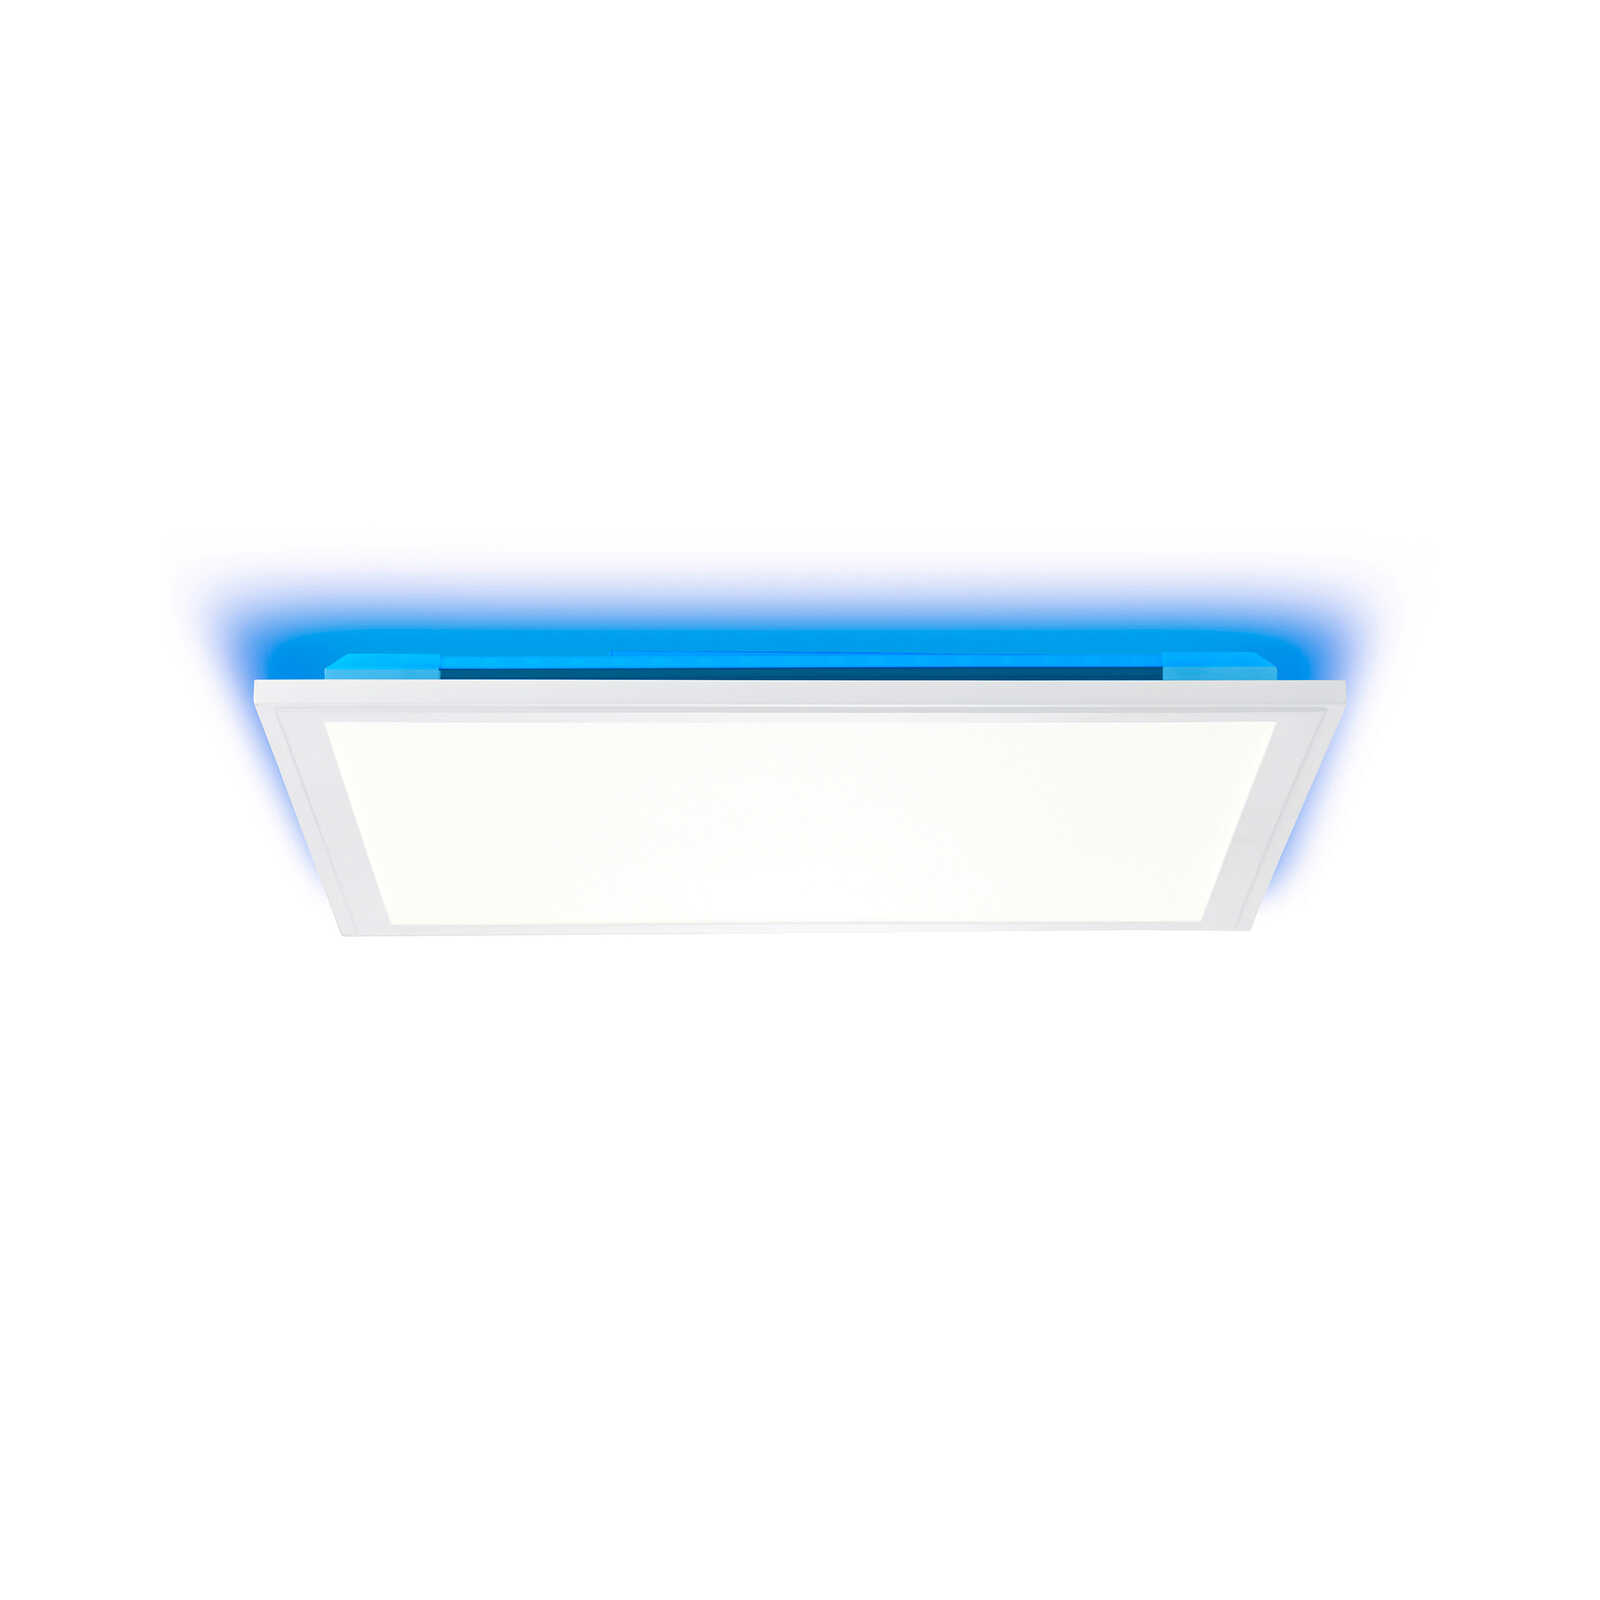 Plastic ceiling light - Albert 1 - White
